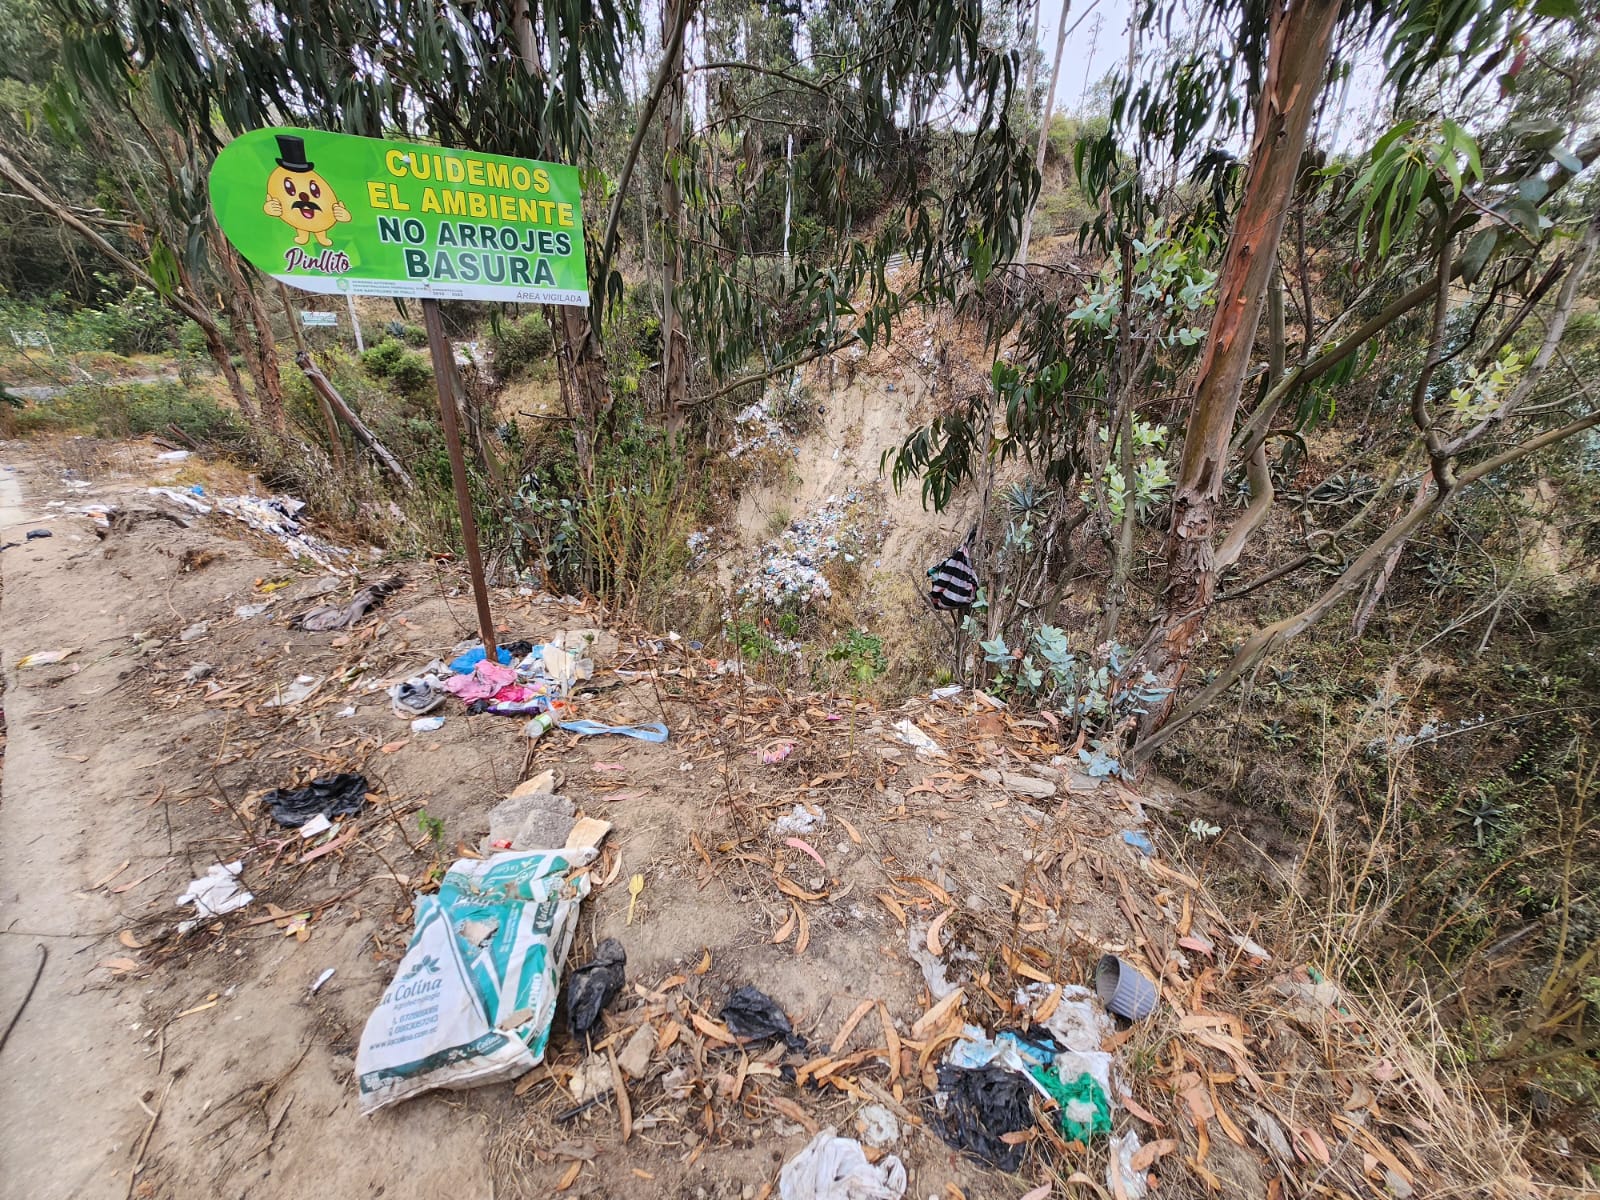 Las quebradas muestran gran cantidad de basura a la vera de las vías donde ciudadanos arrojan los desechos.